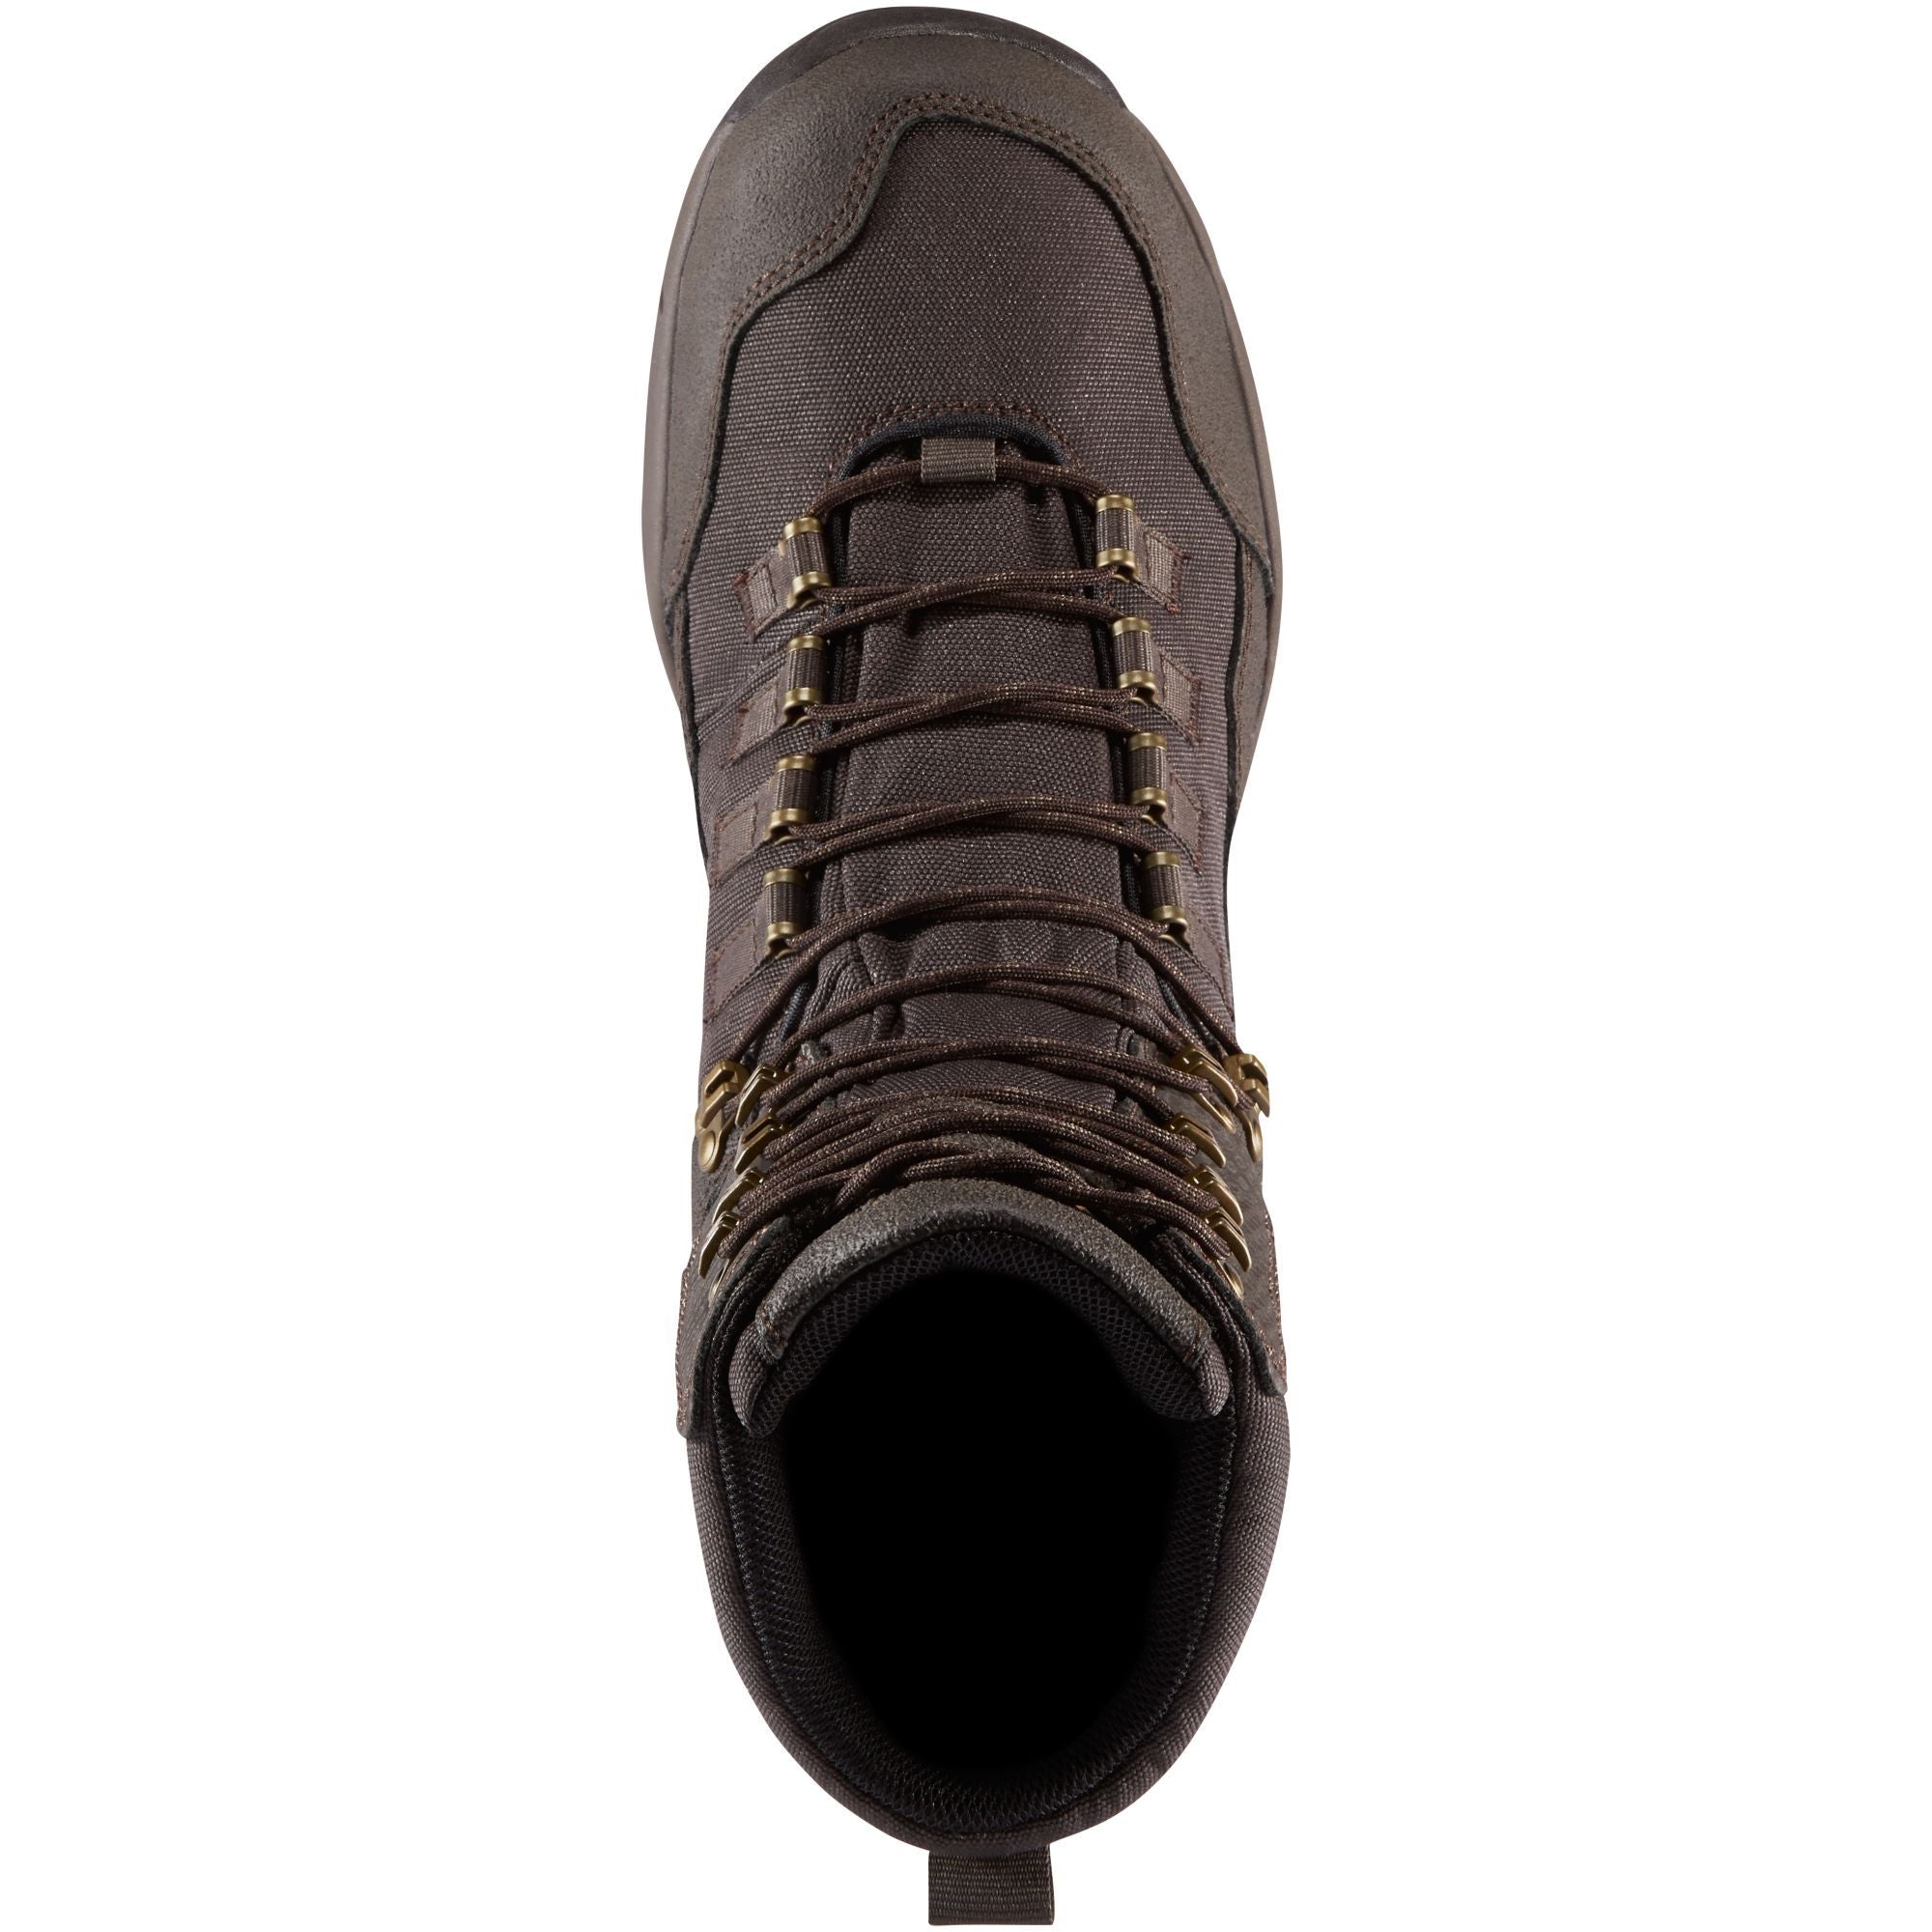 Danner Men's Vital 8" 400G Insulated WP Hunt Boot - Brown - 41556  - Overlook Boots